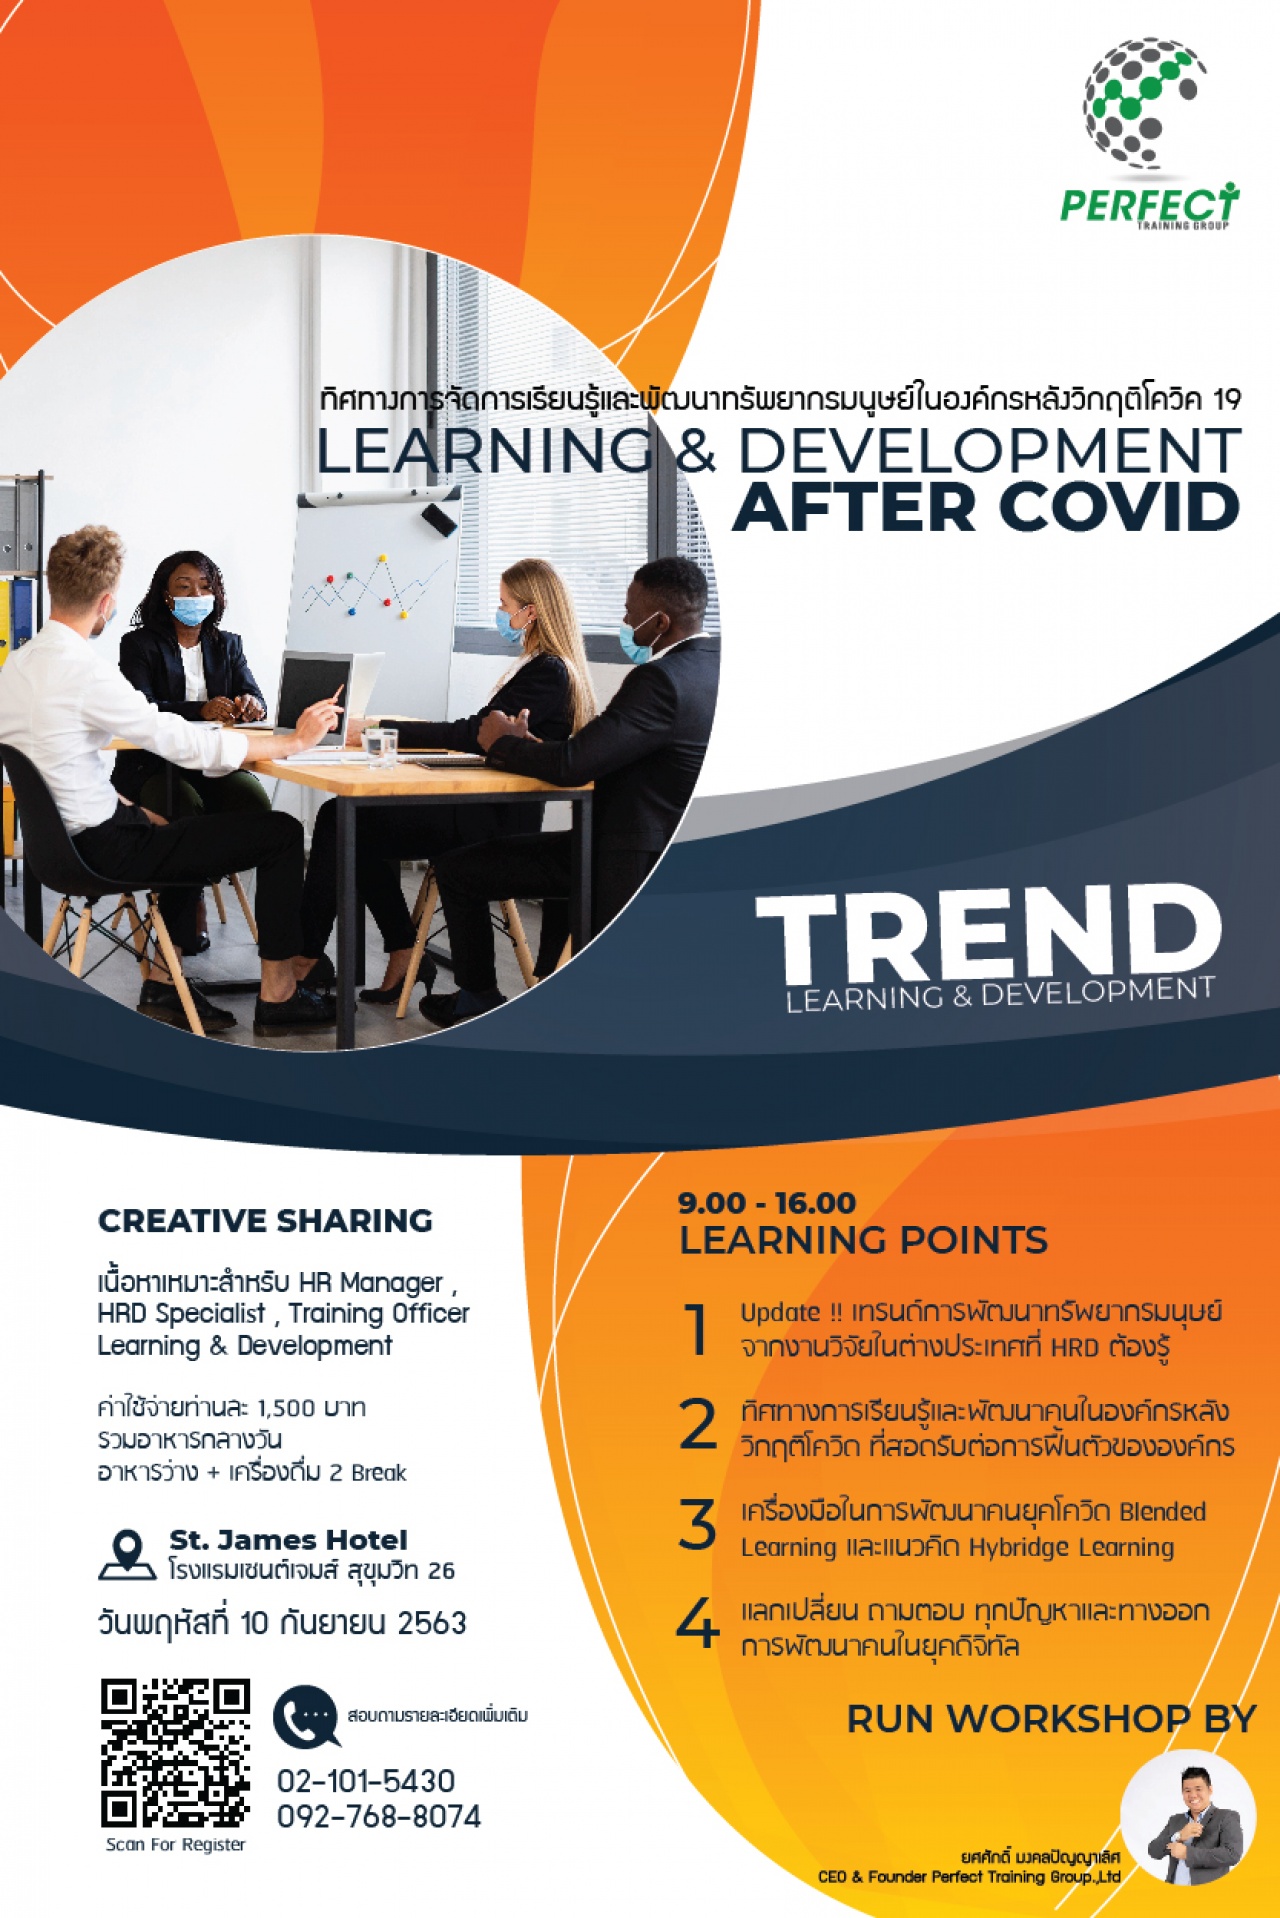 CREATIVE SHARING ครั้งที่ 2 "ทิศทางการจัดการเรียนรู้และพัฒนาทรัพยากรมนุษย์ในองค์กรหลังวิกฤติโควิค 19" (LEARNING & DEVELOPMENT AFTER COVID)